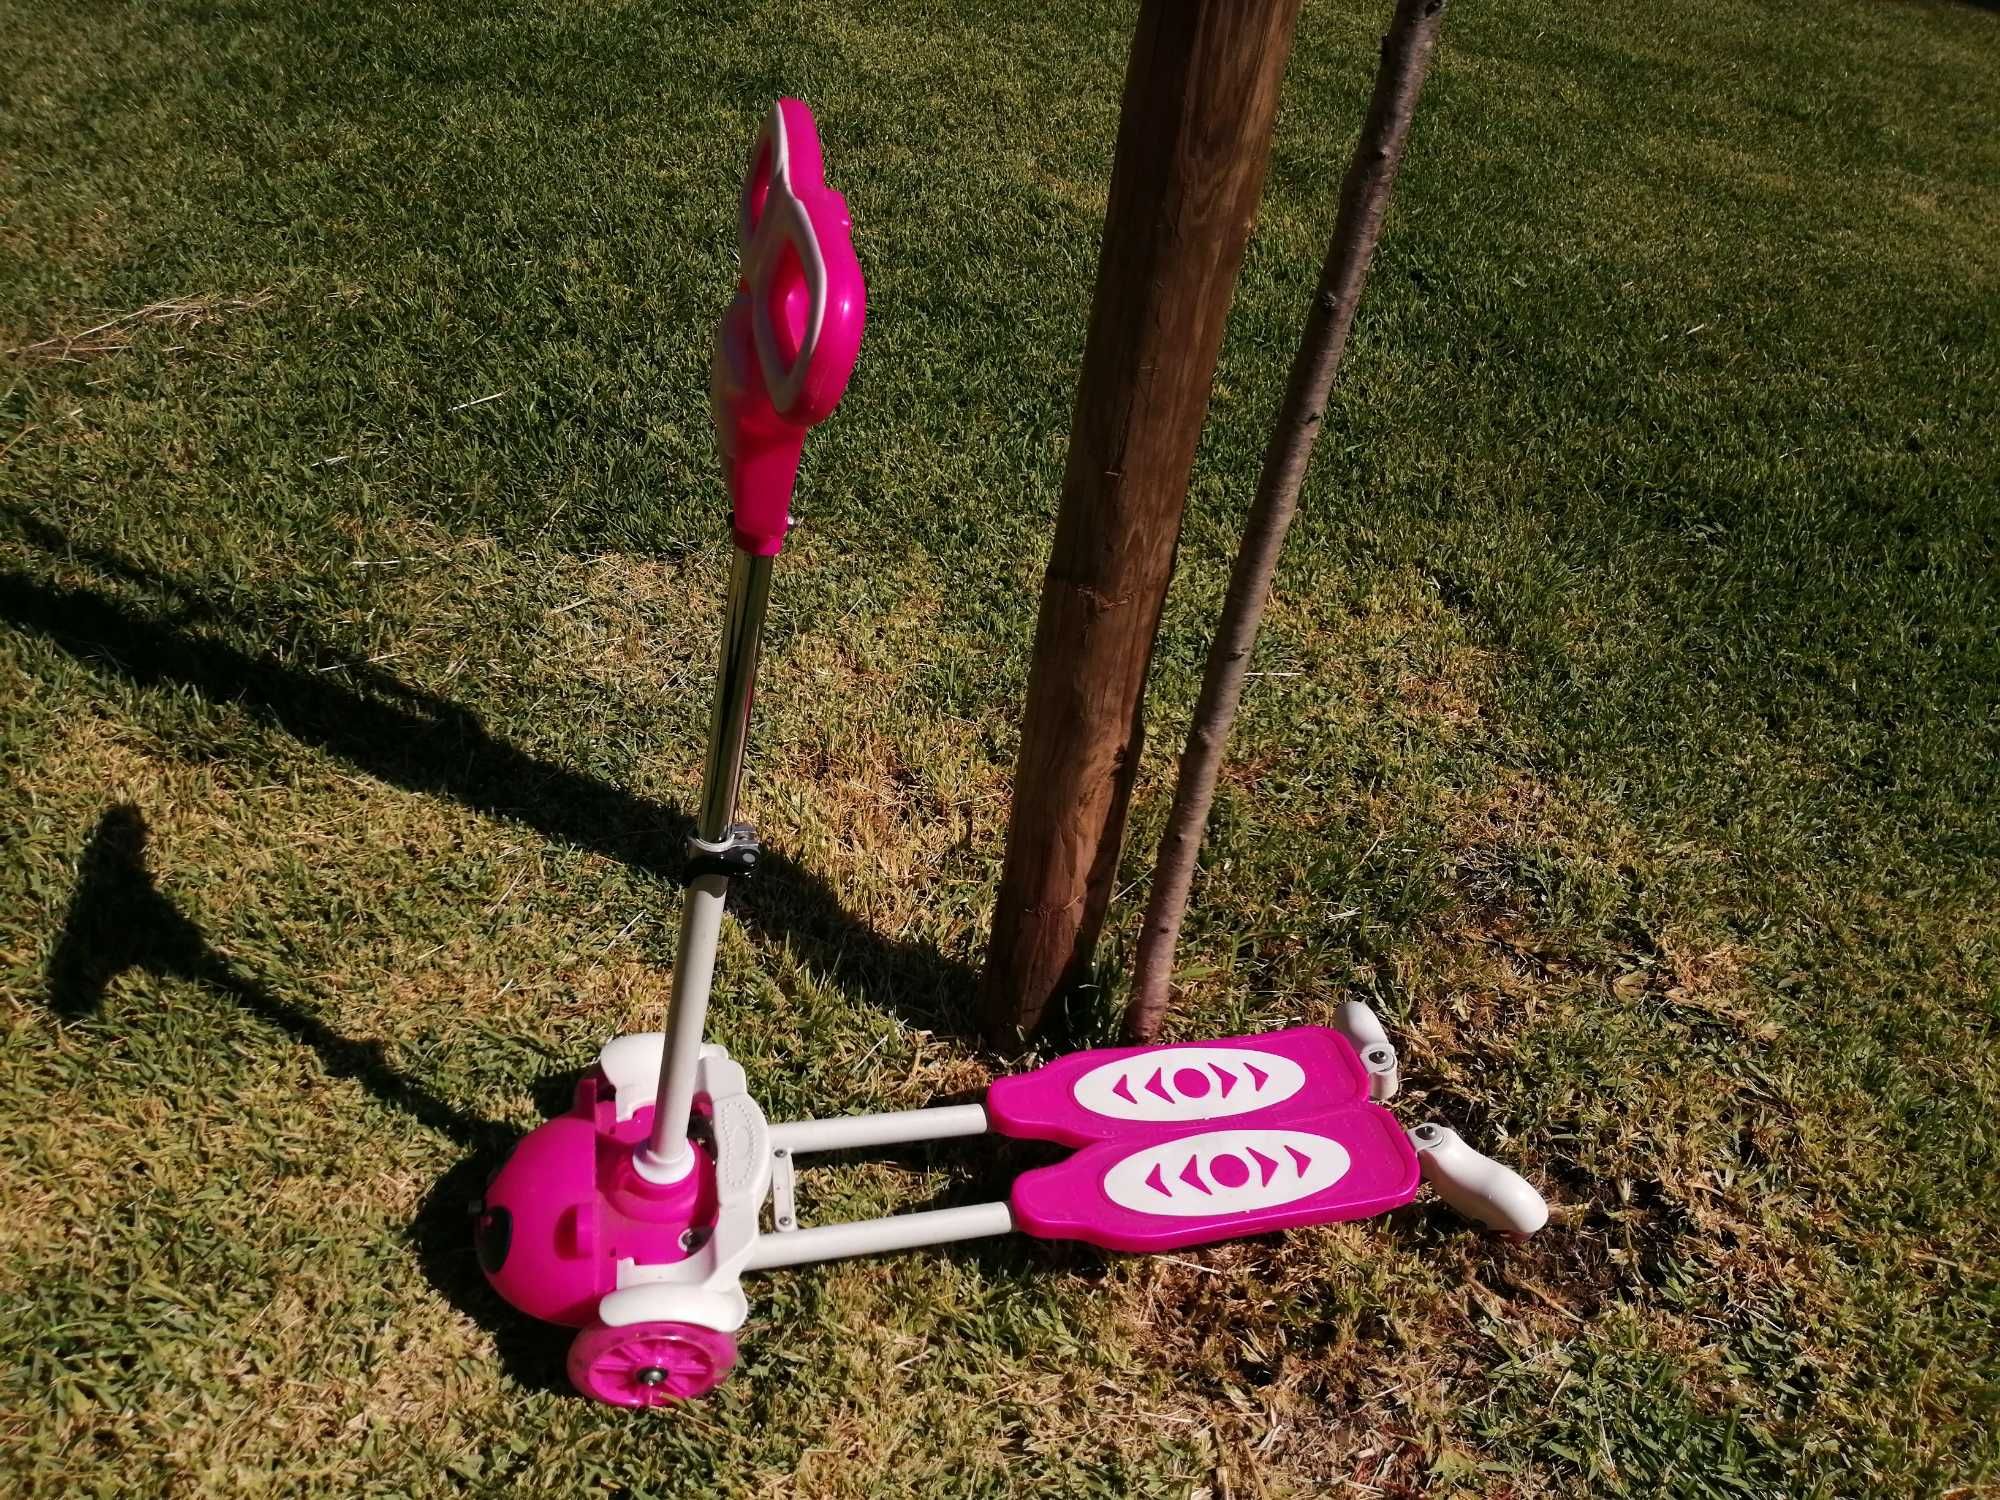 Trotinete rosa 4 rodas para crianças / Pink Scooter 4 wheels for kids